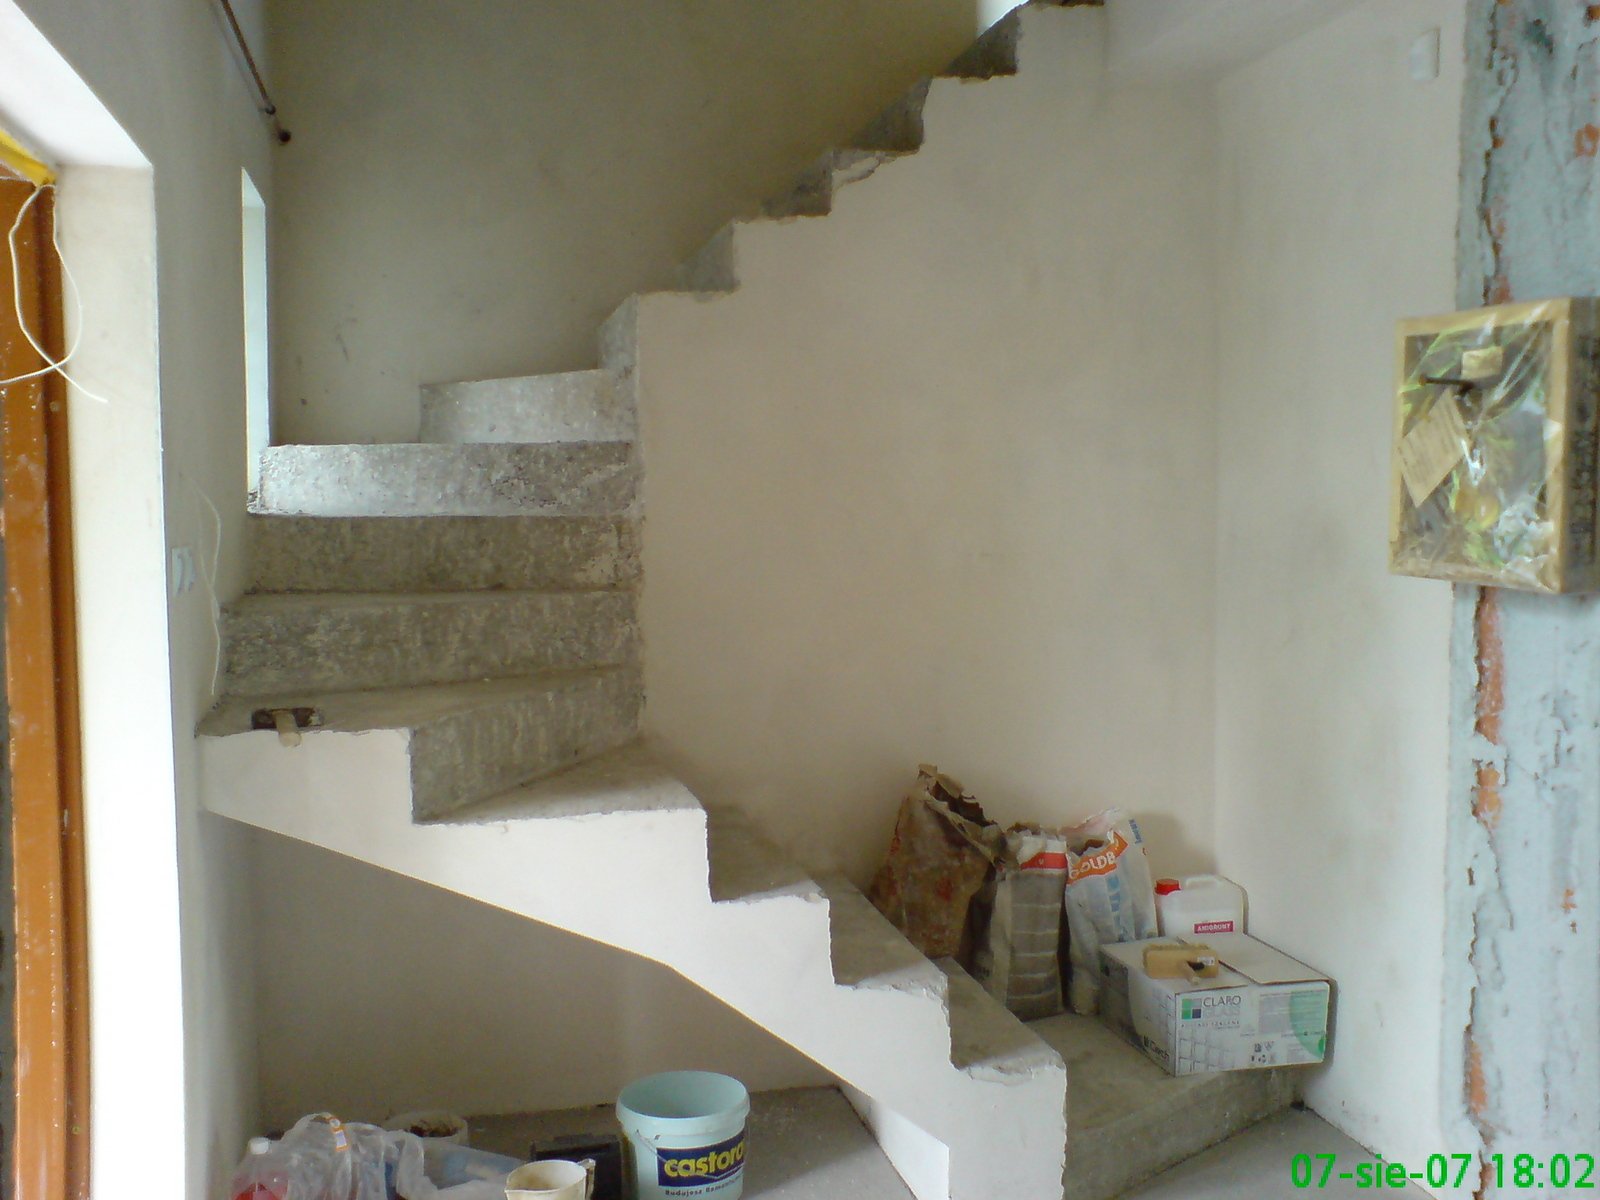 Zmodyfikowane schody